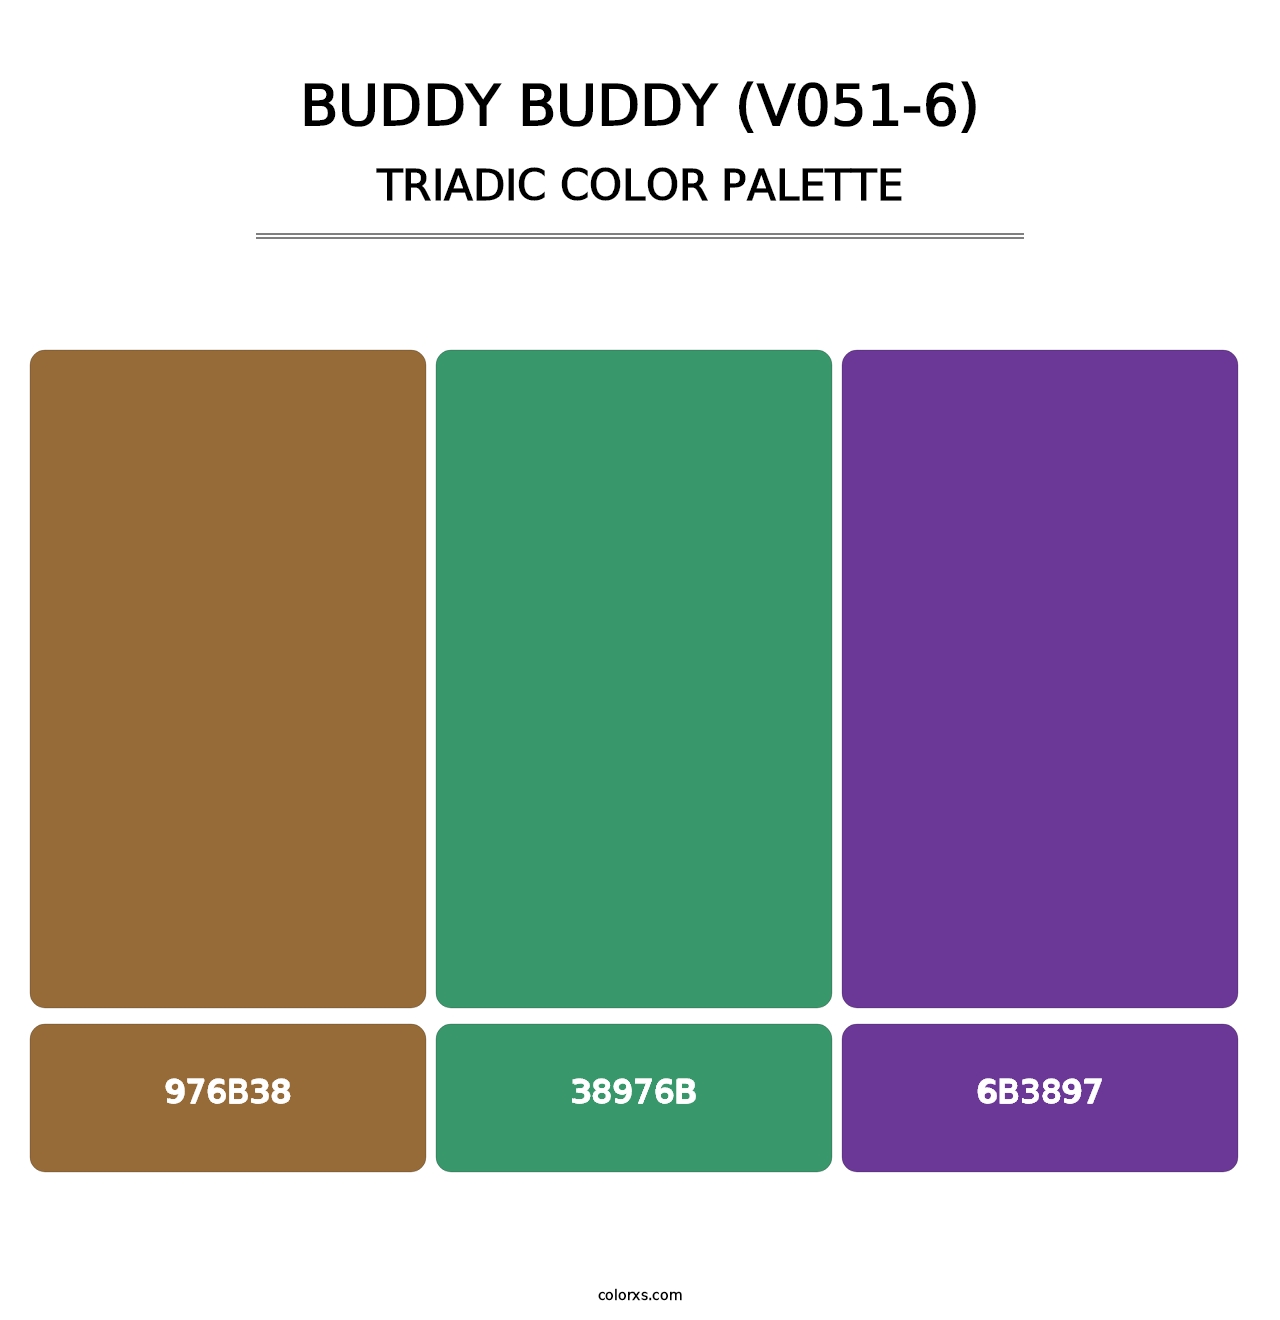 Buddy Buddy (V051-6) - Triadic Color Palette